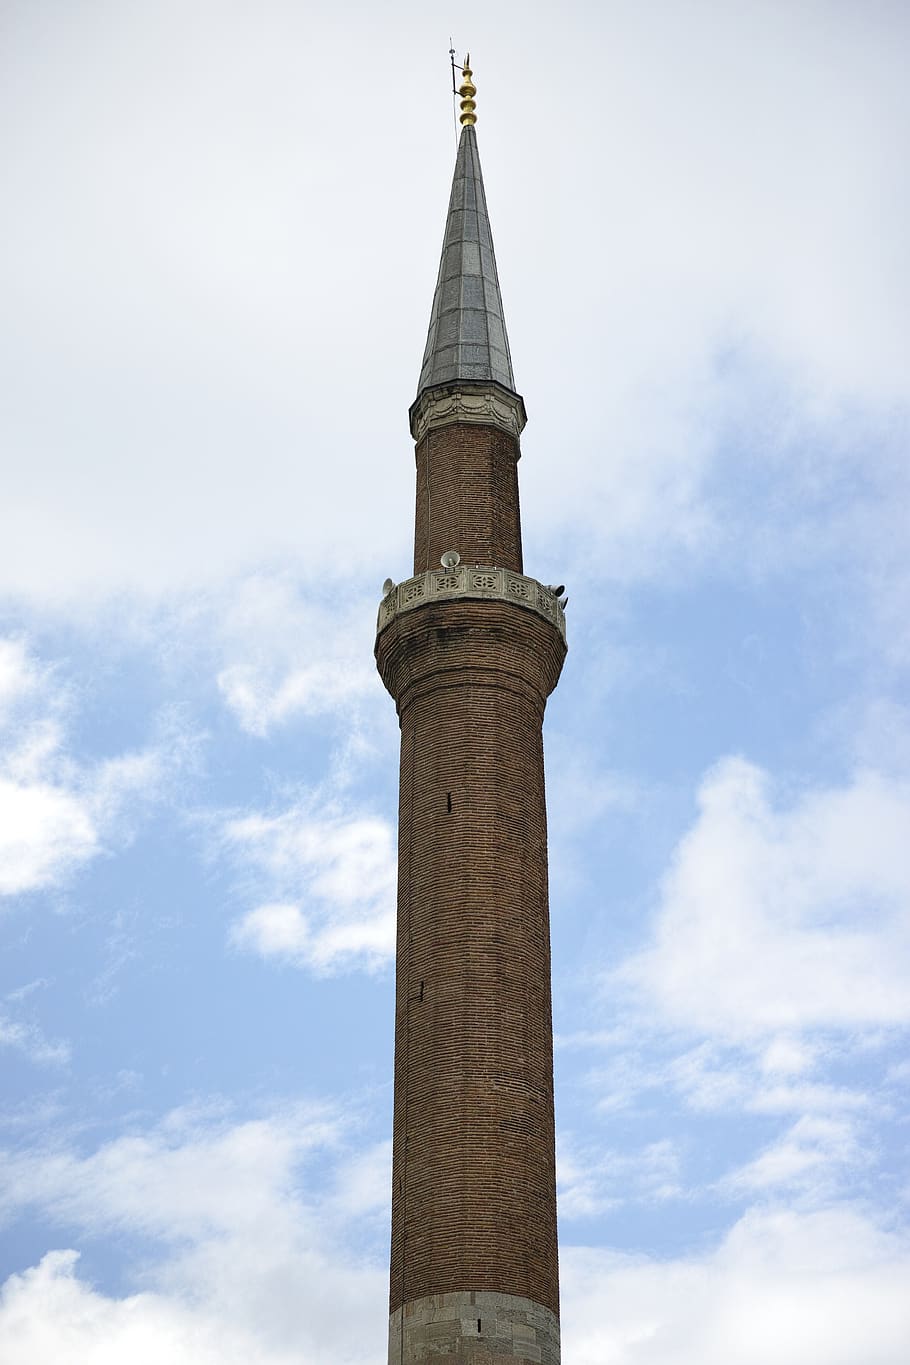 cami, minaret, istanbul, turkey, architecture, religion, islam, HD wallpaper